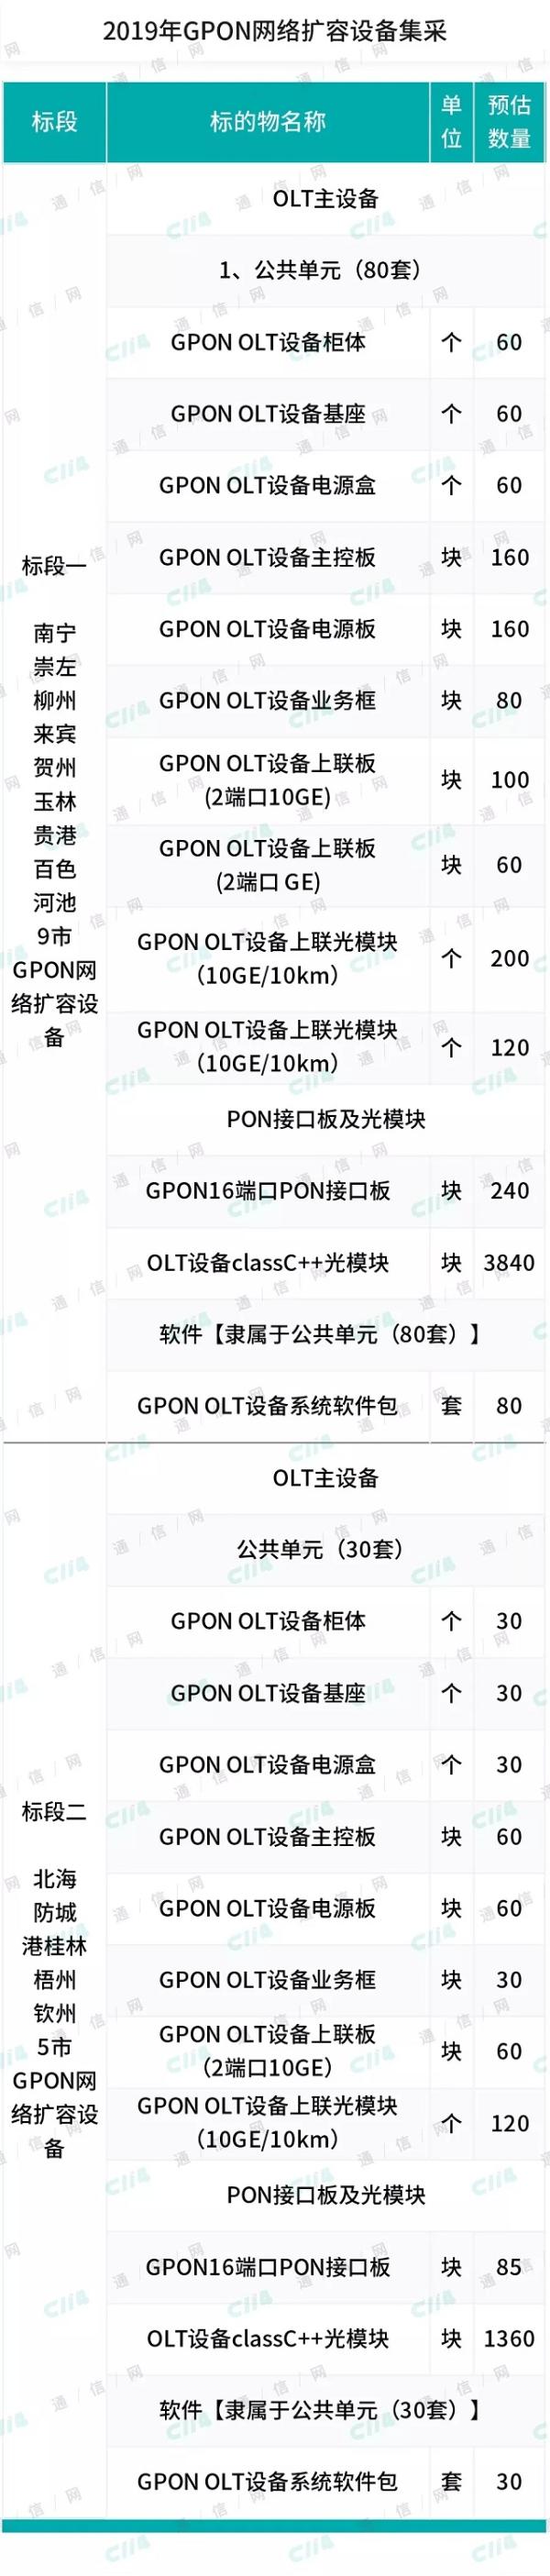 广西联通开启2019 年GPON 网络扩容集采：总预算586万